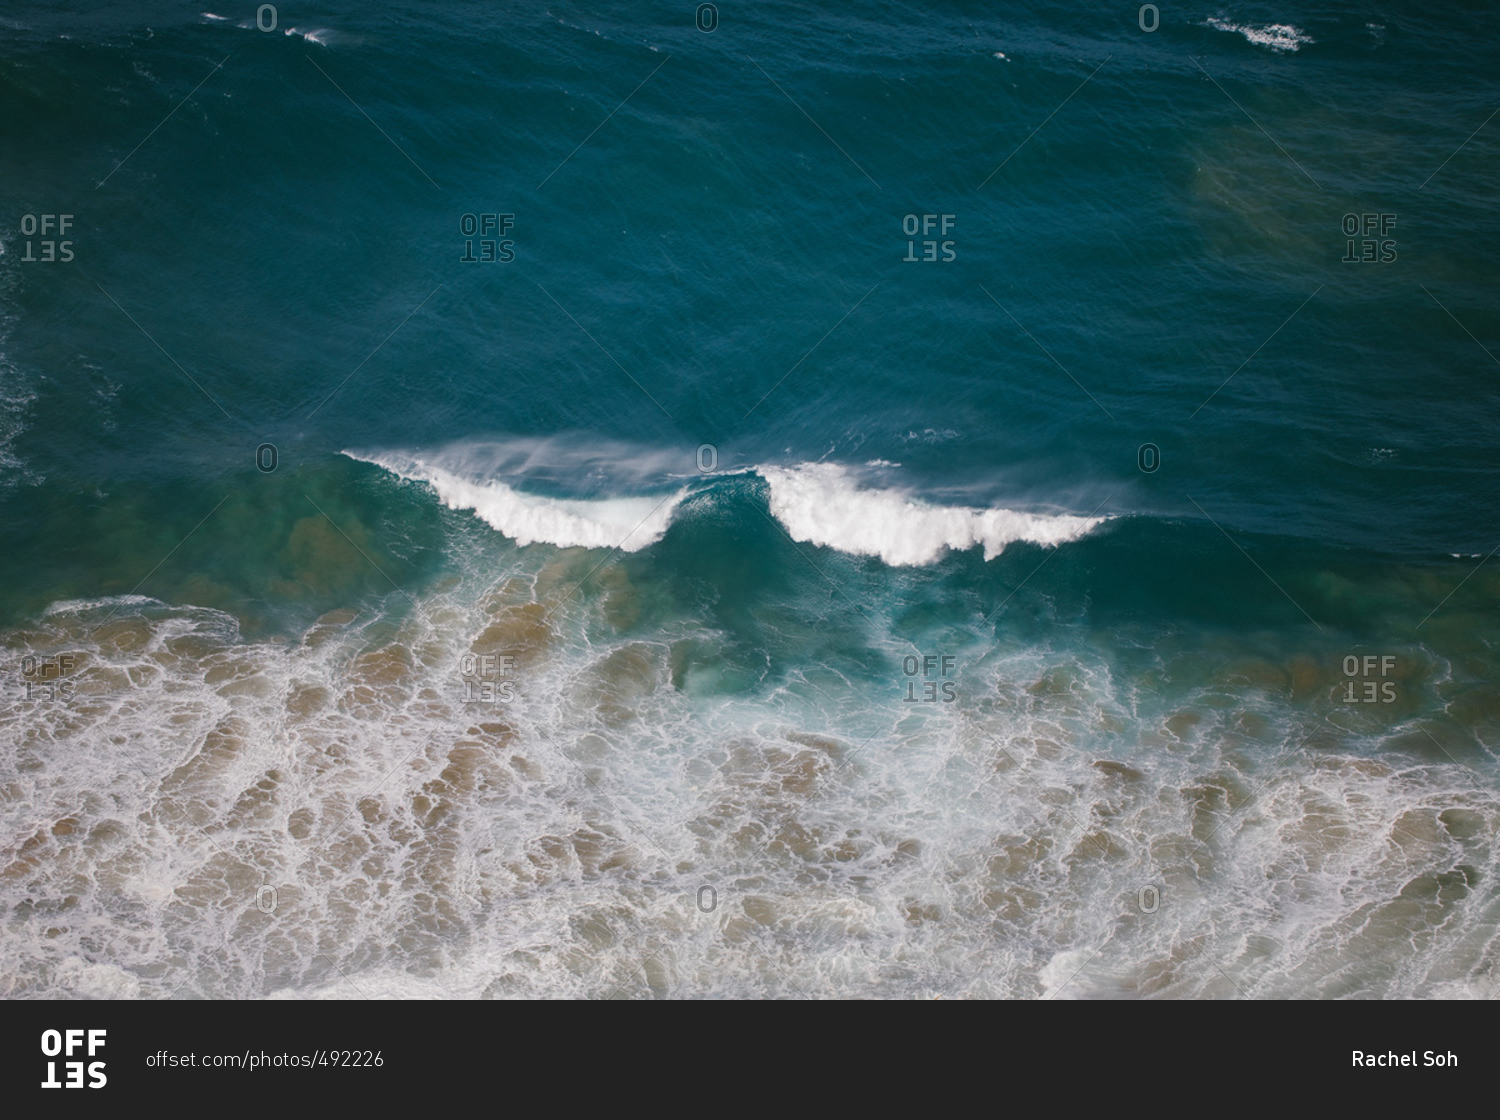 Ocean waves off a shore